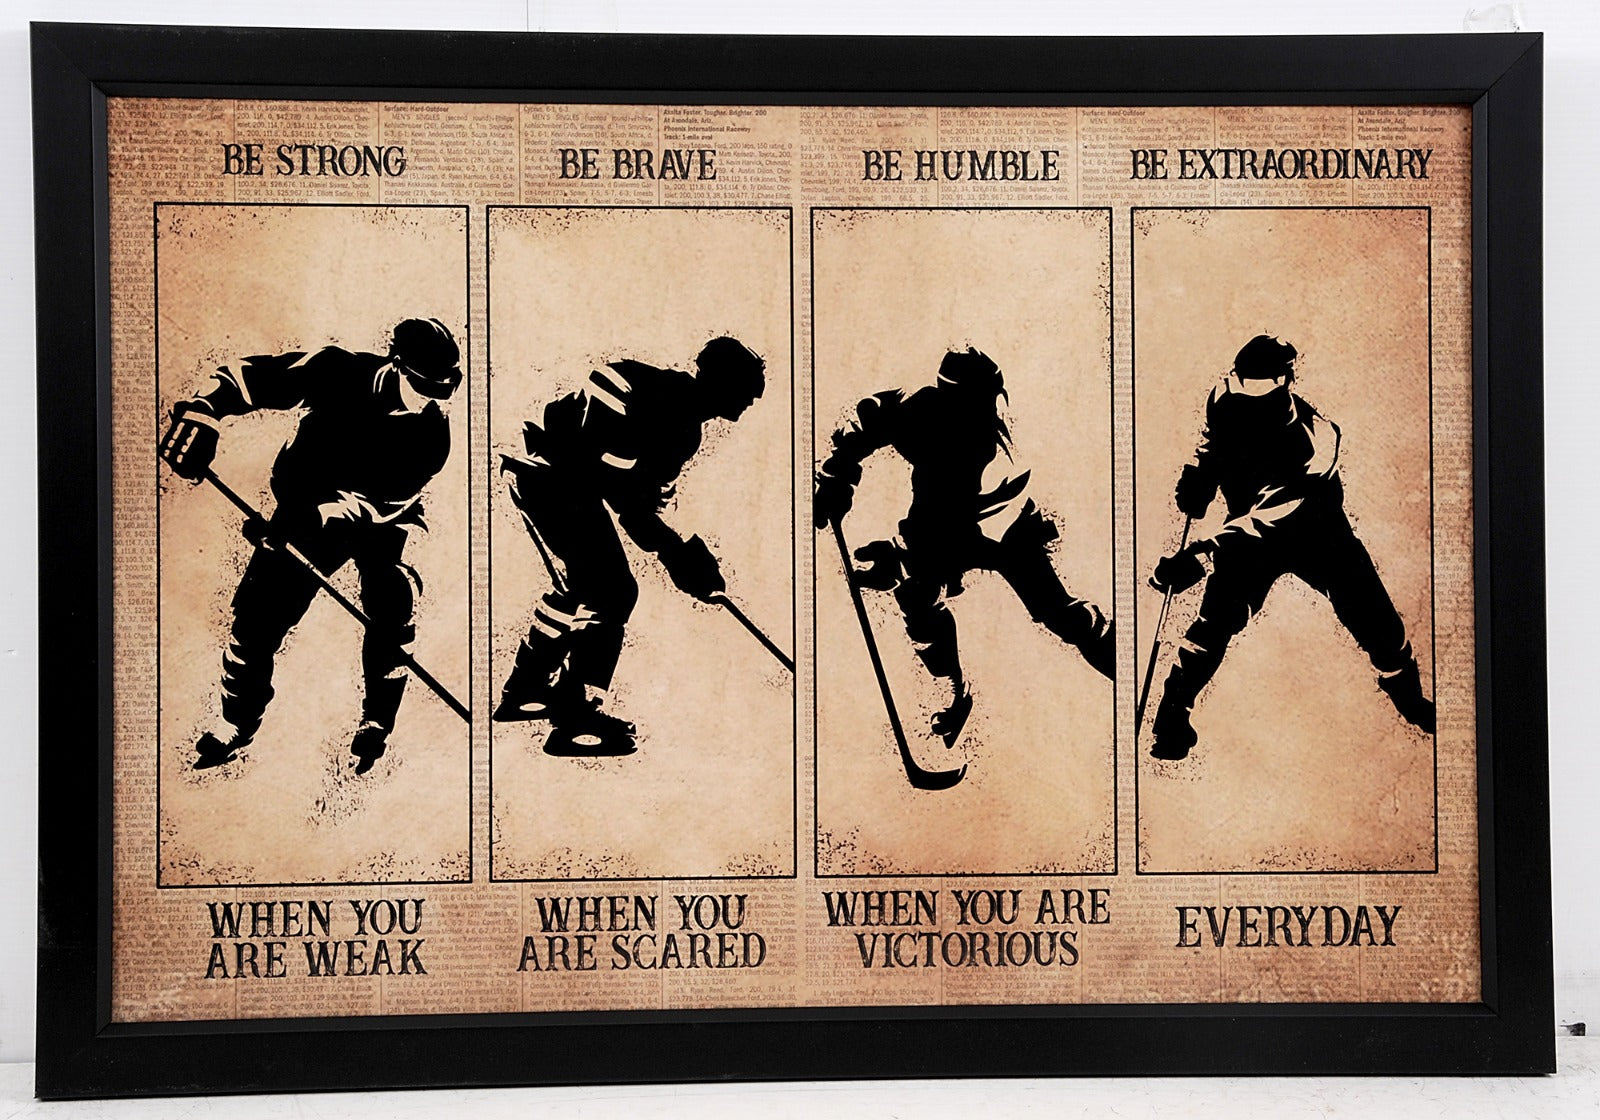 Ice Hockey Frame "Be Extraordinary"